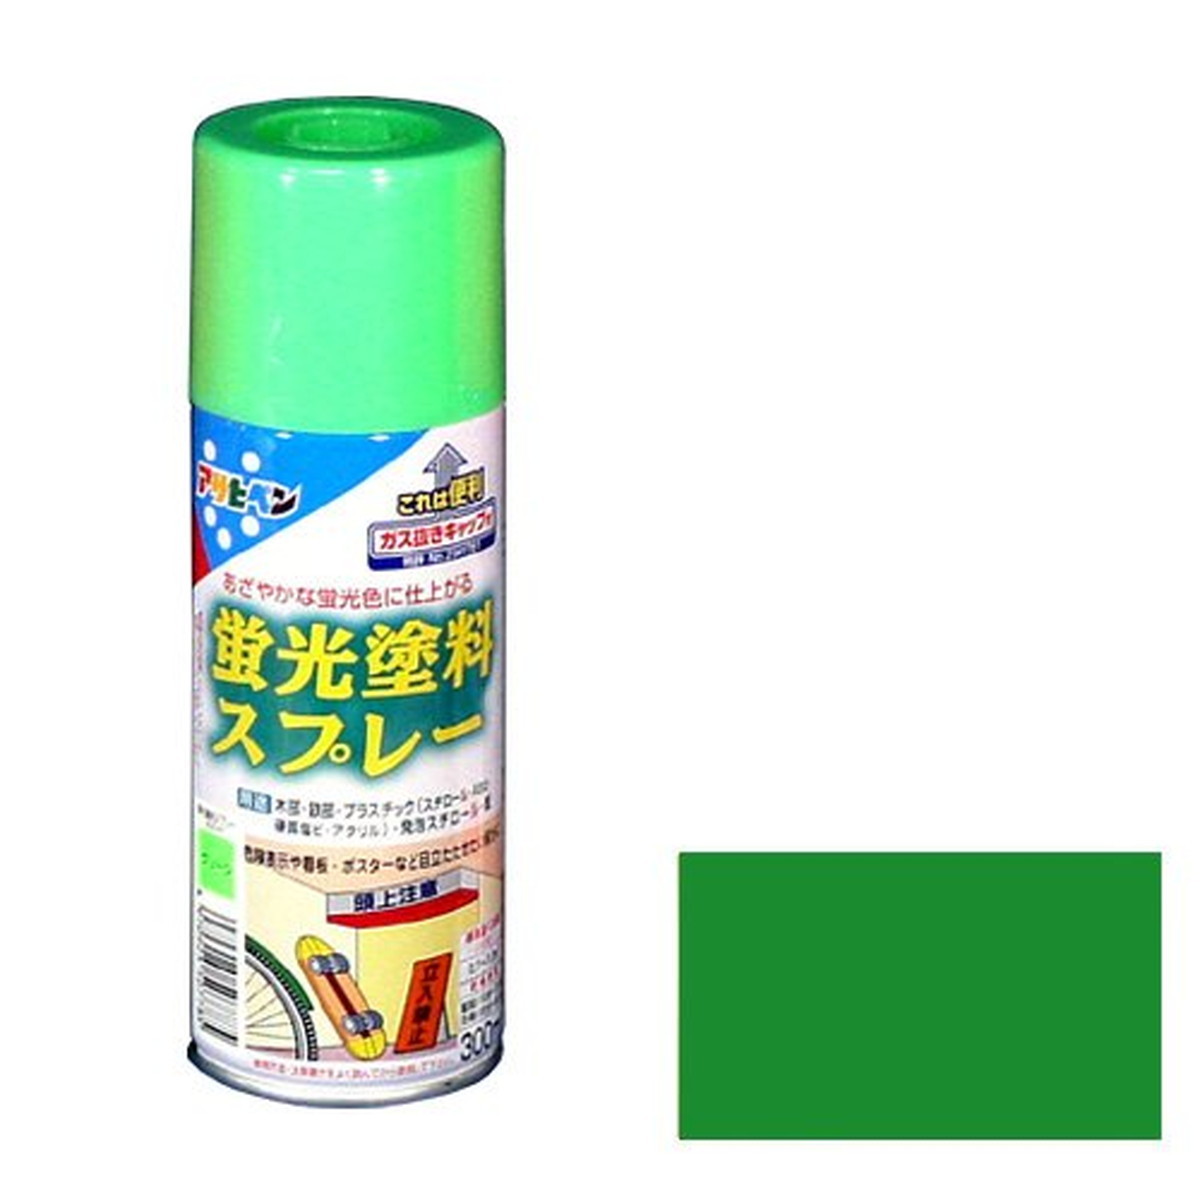 アサヒペン 蛍光塗料スプレー グリーン 300mL